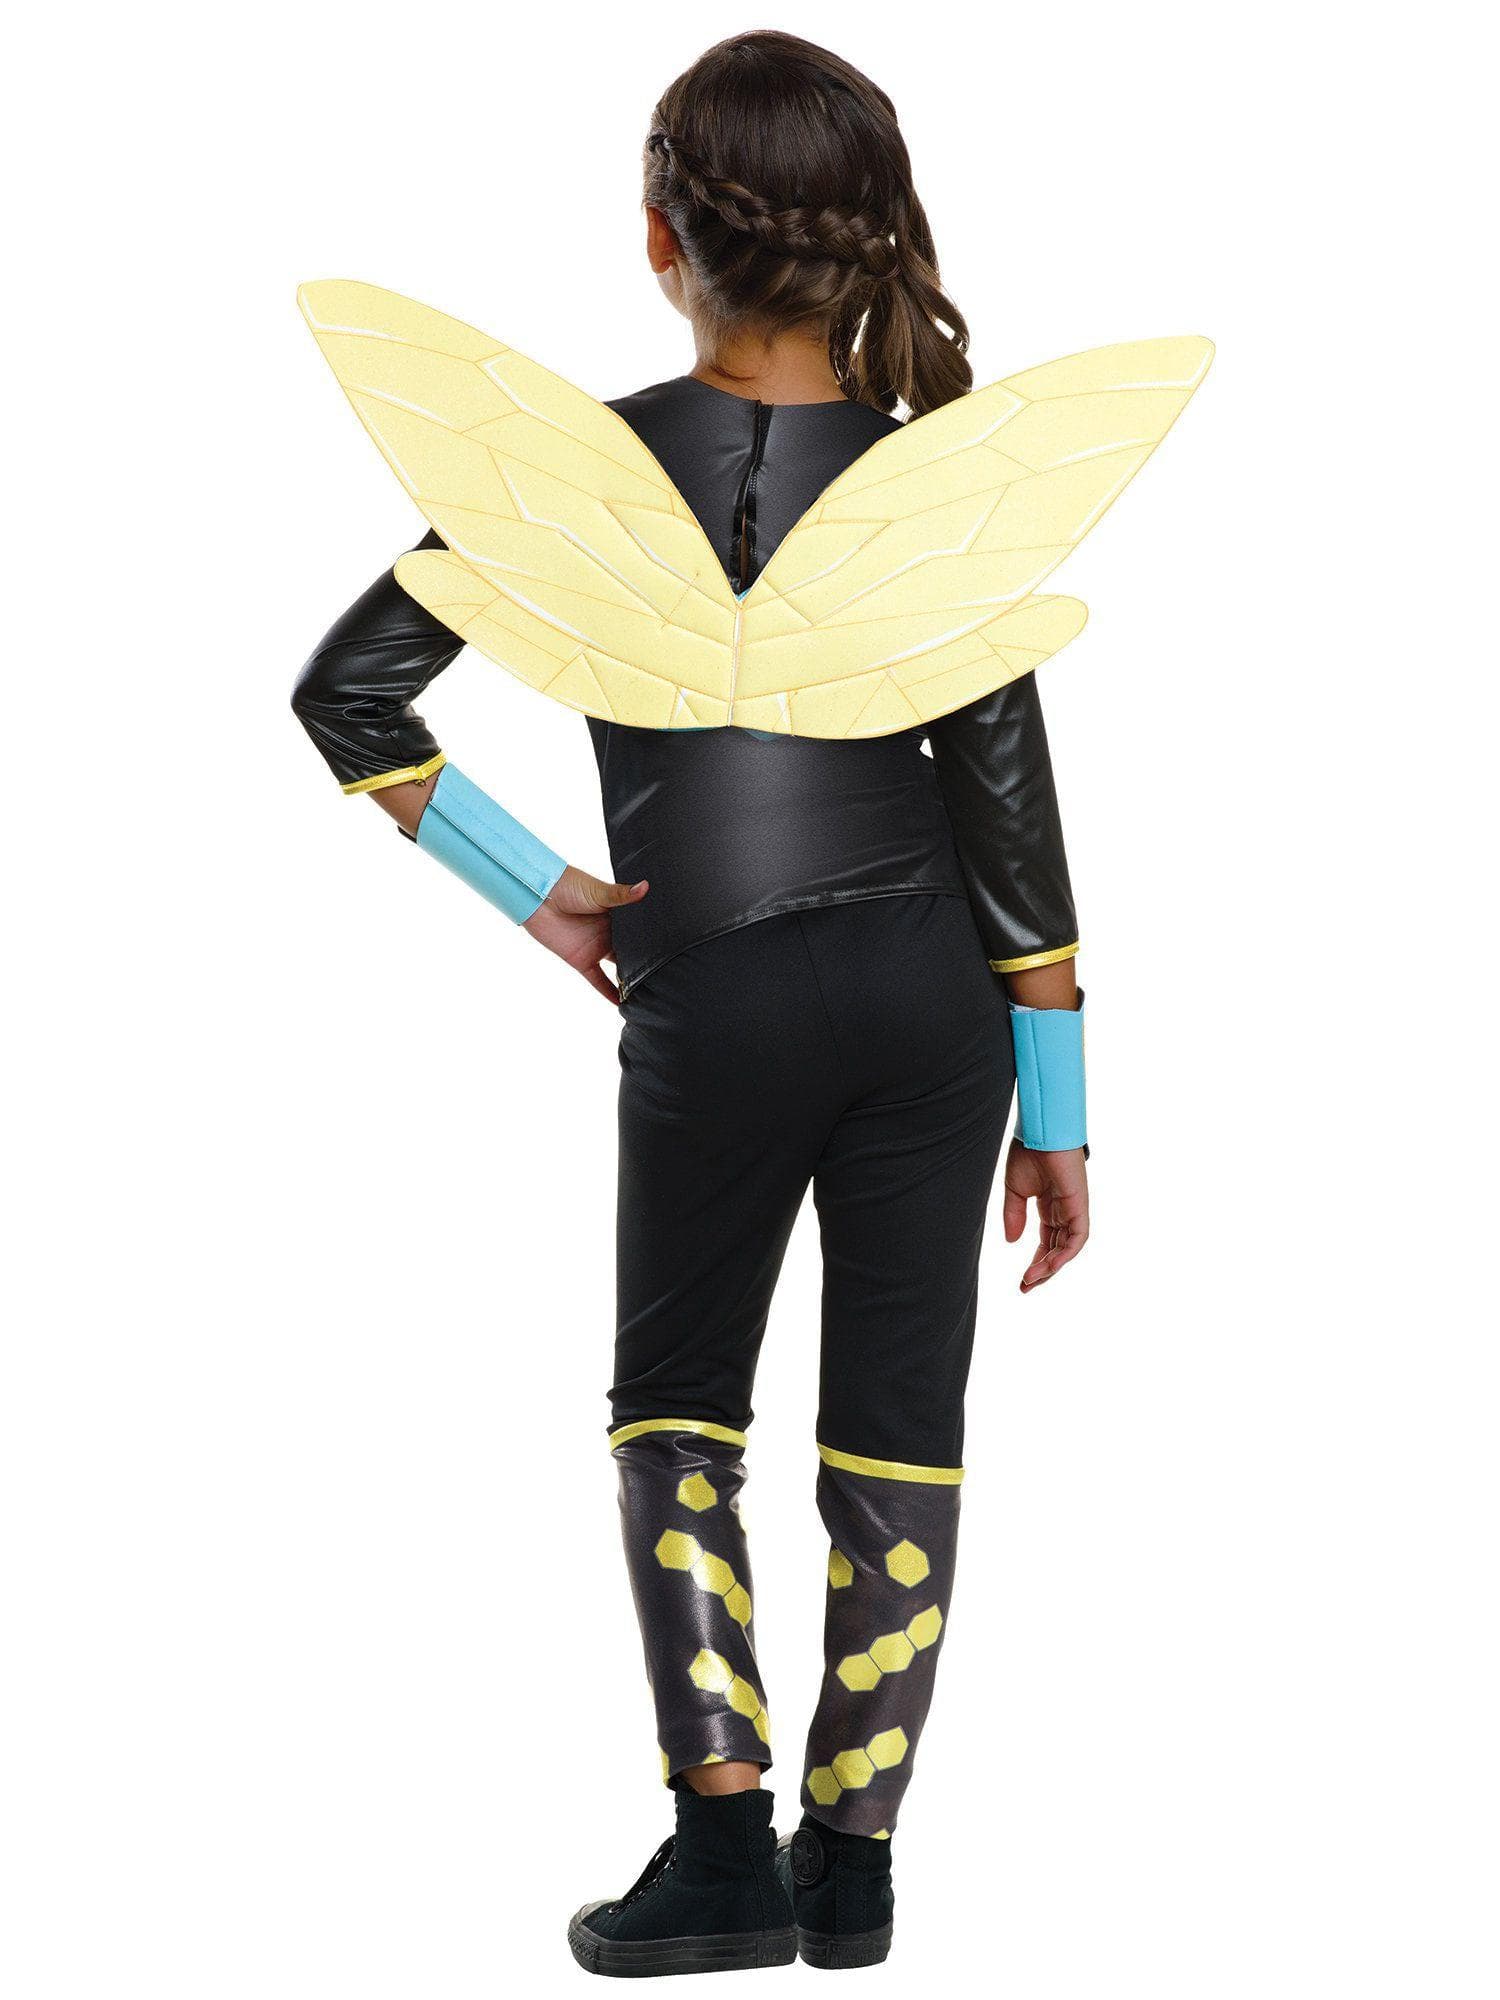 Girls' DC Superhero Girls Bumble Bee Costume - costumes.com